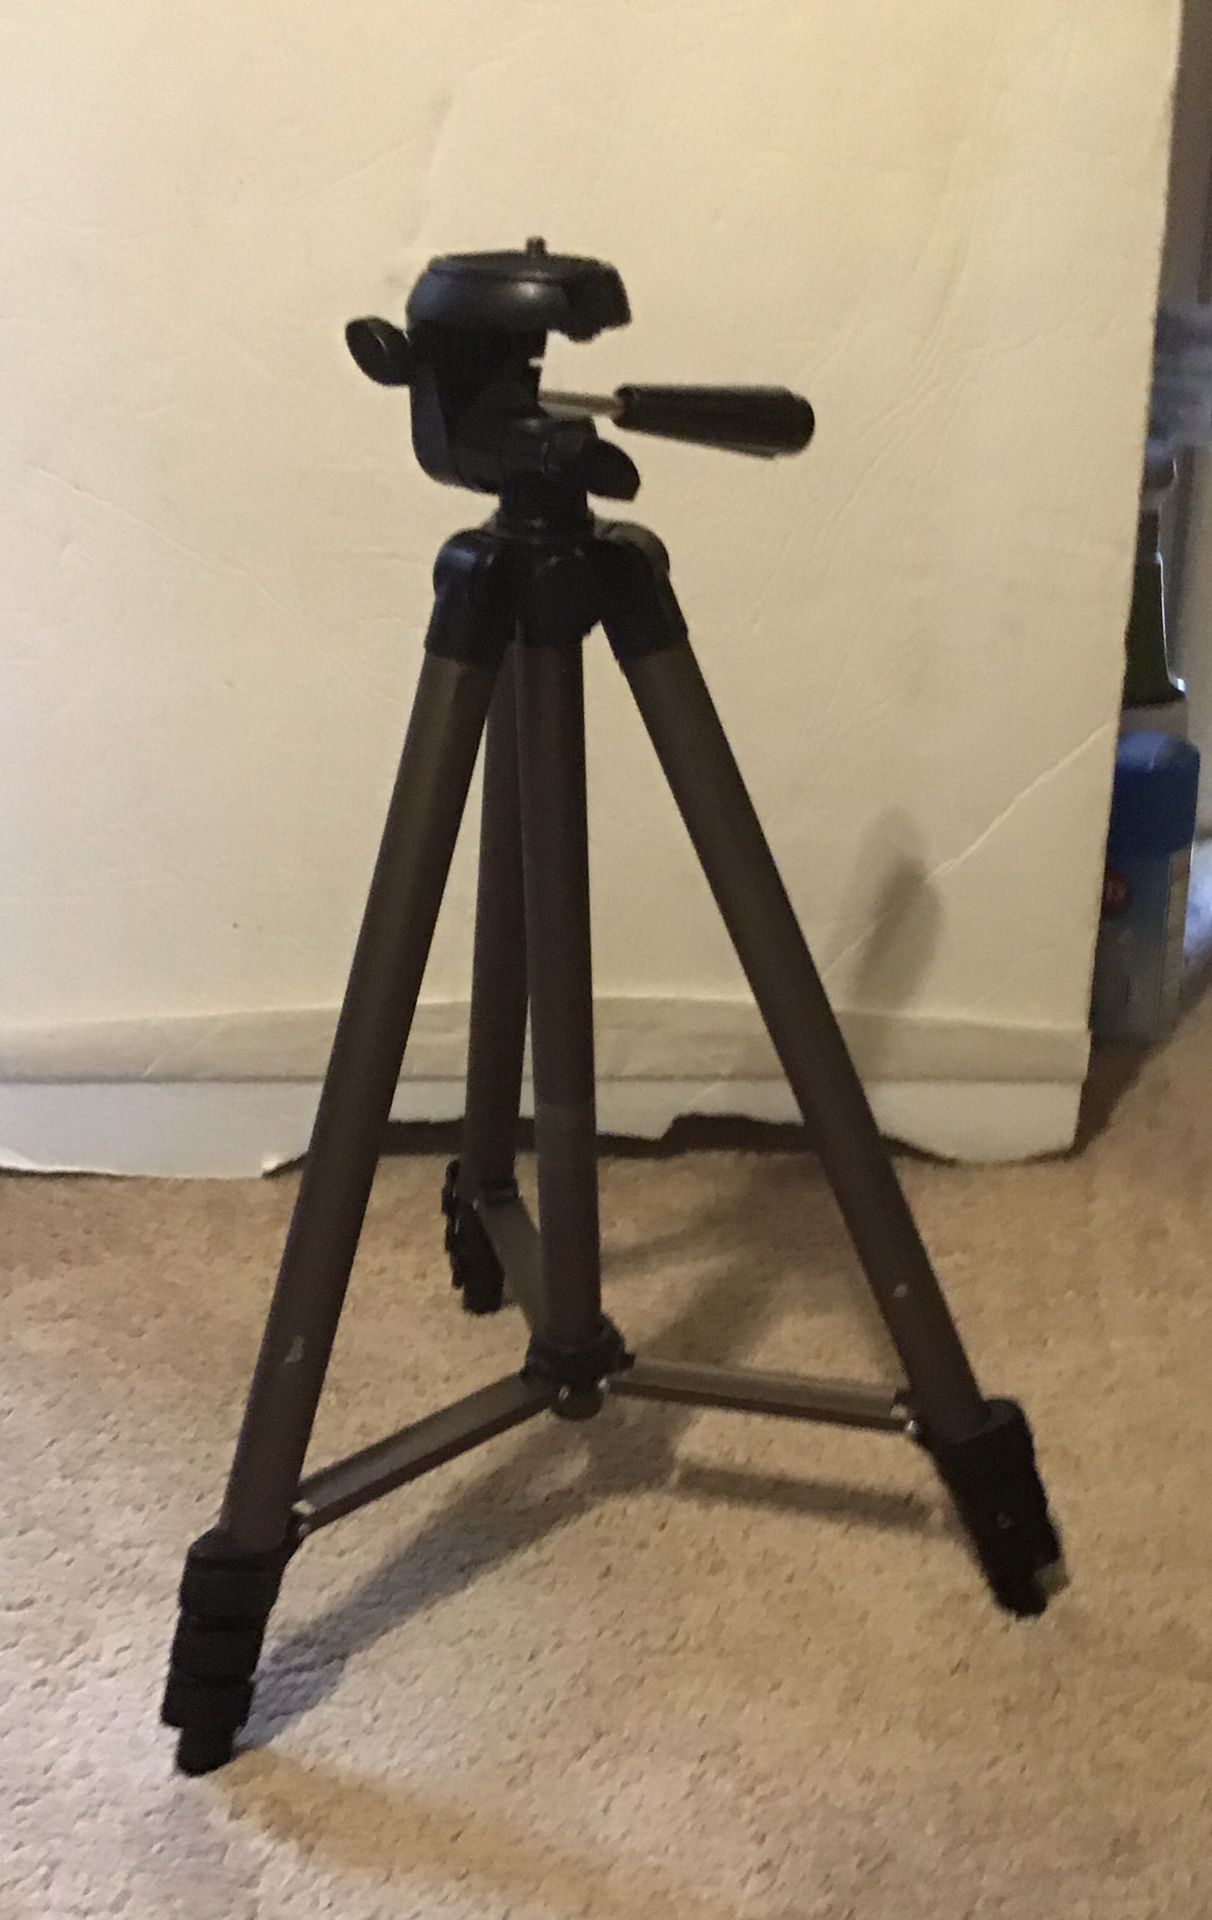 Lightweight Aluminum Camera Mount Tripod Extending Legs 16.5 to 50” Tall NO BAG